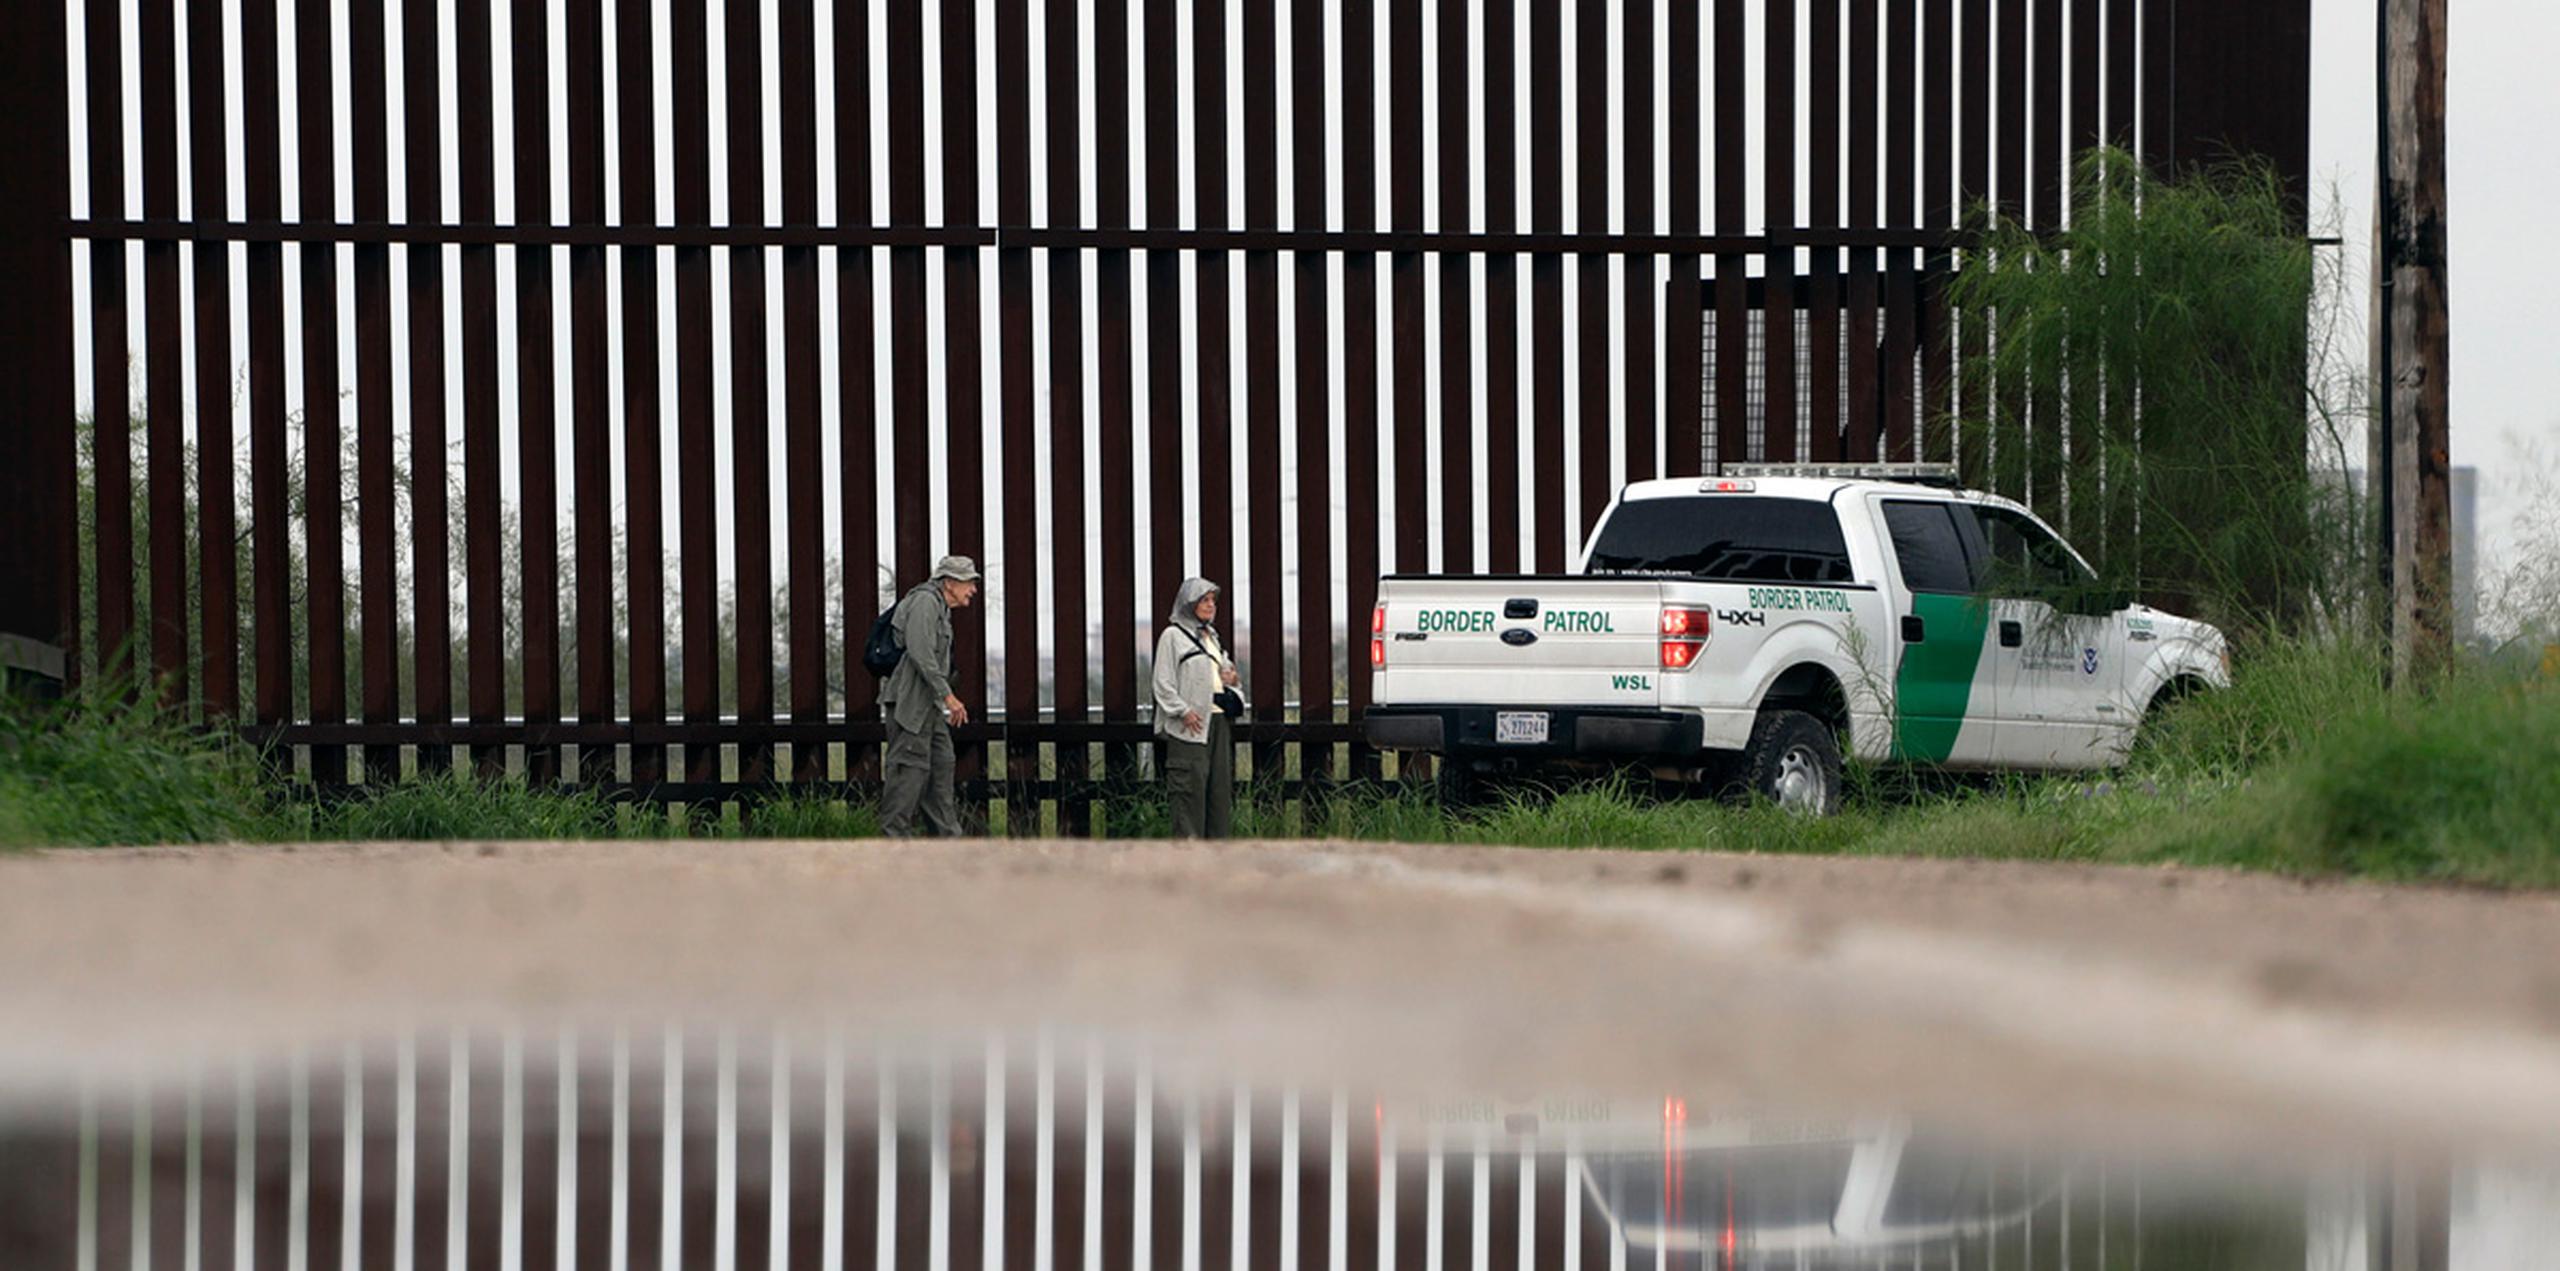 Una encuesta realizada en mayo en ciudades fronterizas del suroeste del país halló que el 72% de los residentes estaban en contra del muro.  (AP)